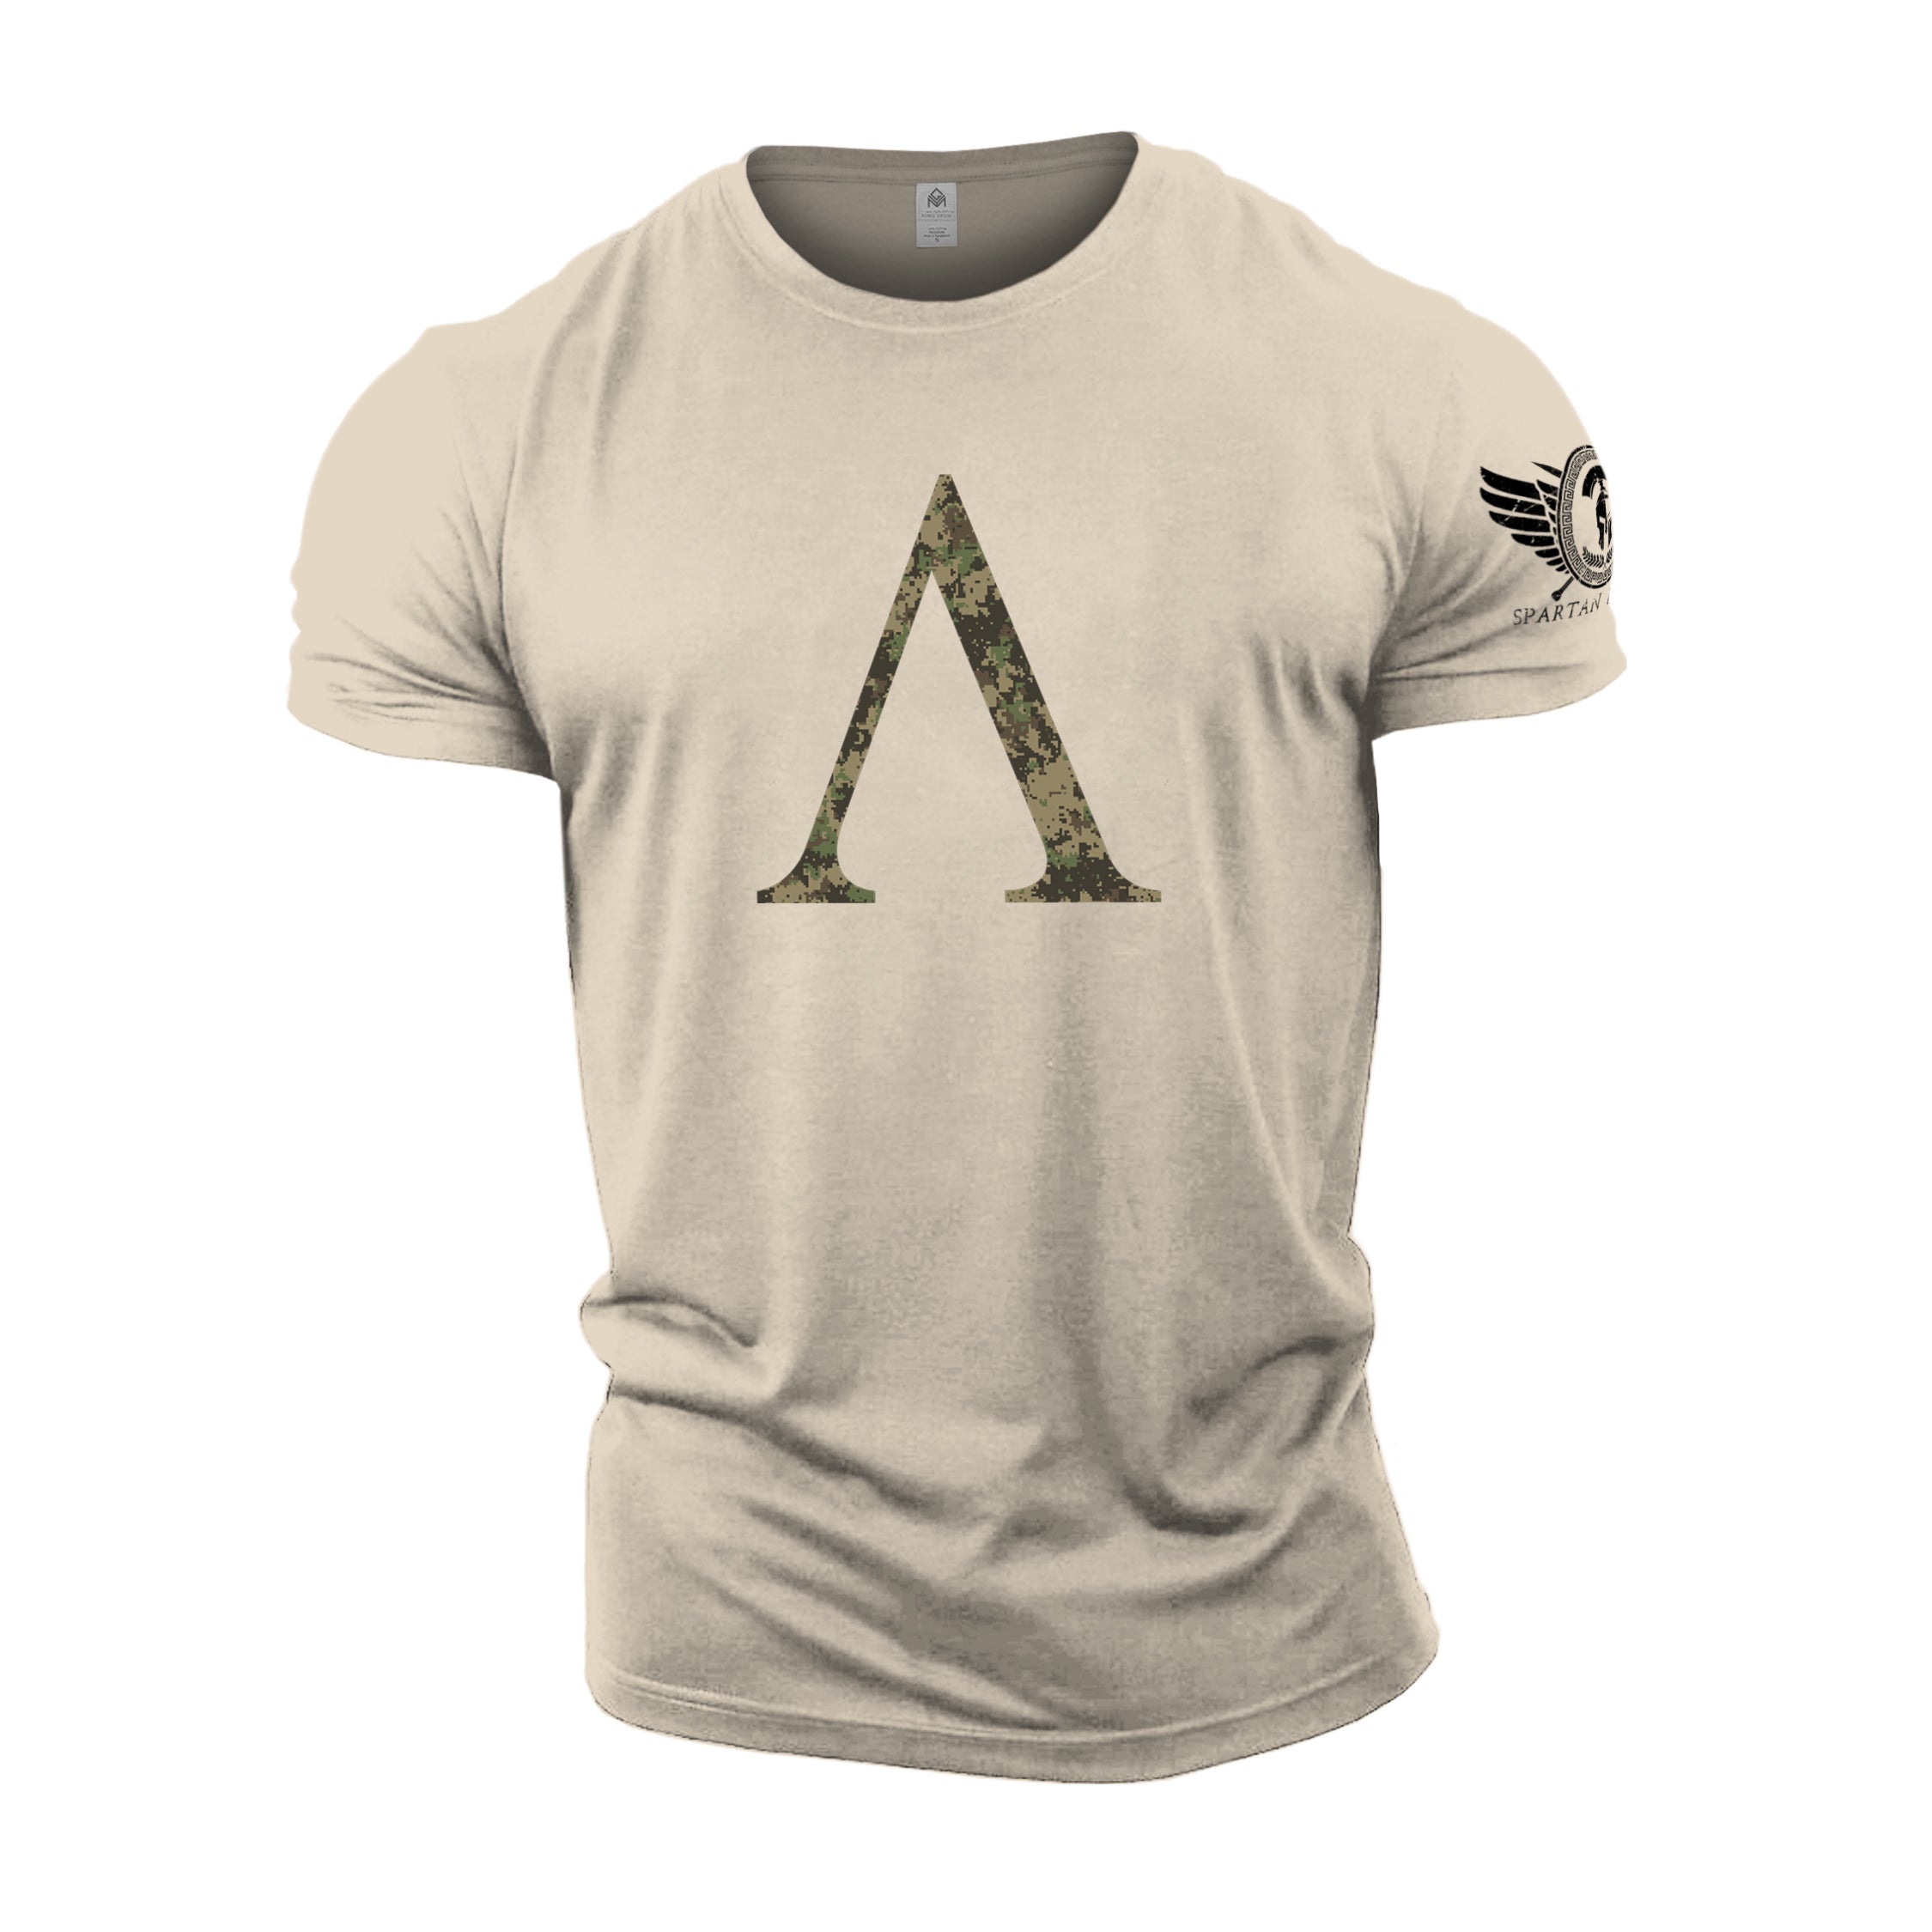 Spartan Symbol Woodland Camo - Spartan Forged - Gym T-Shirt